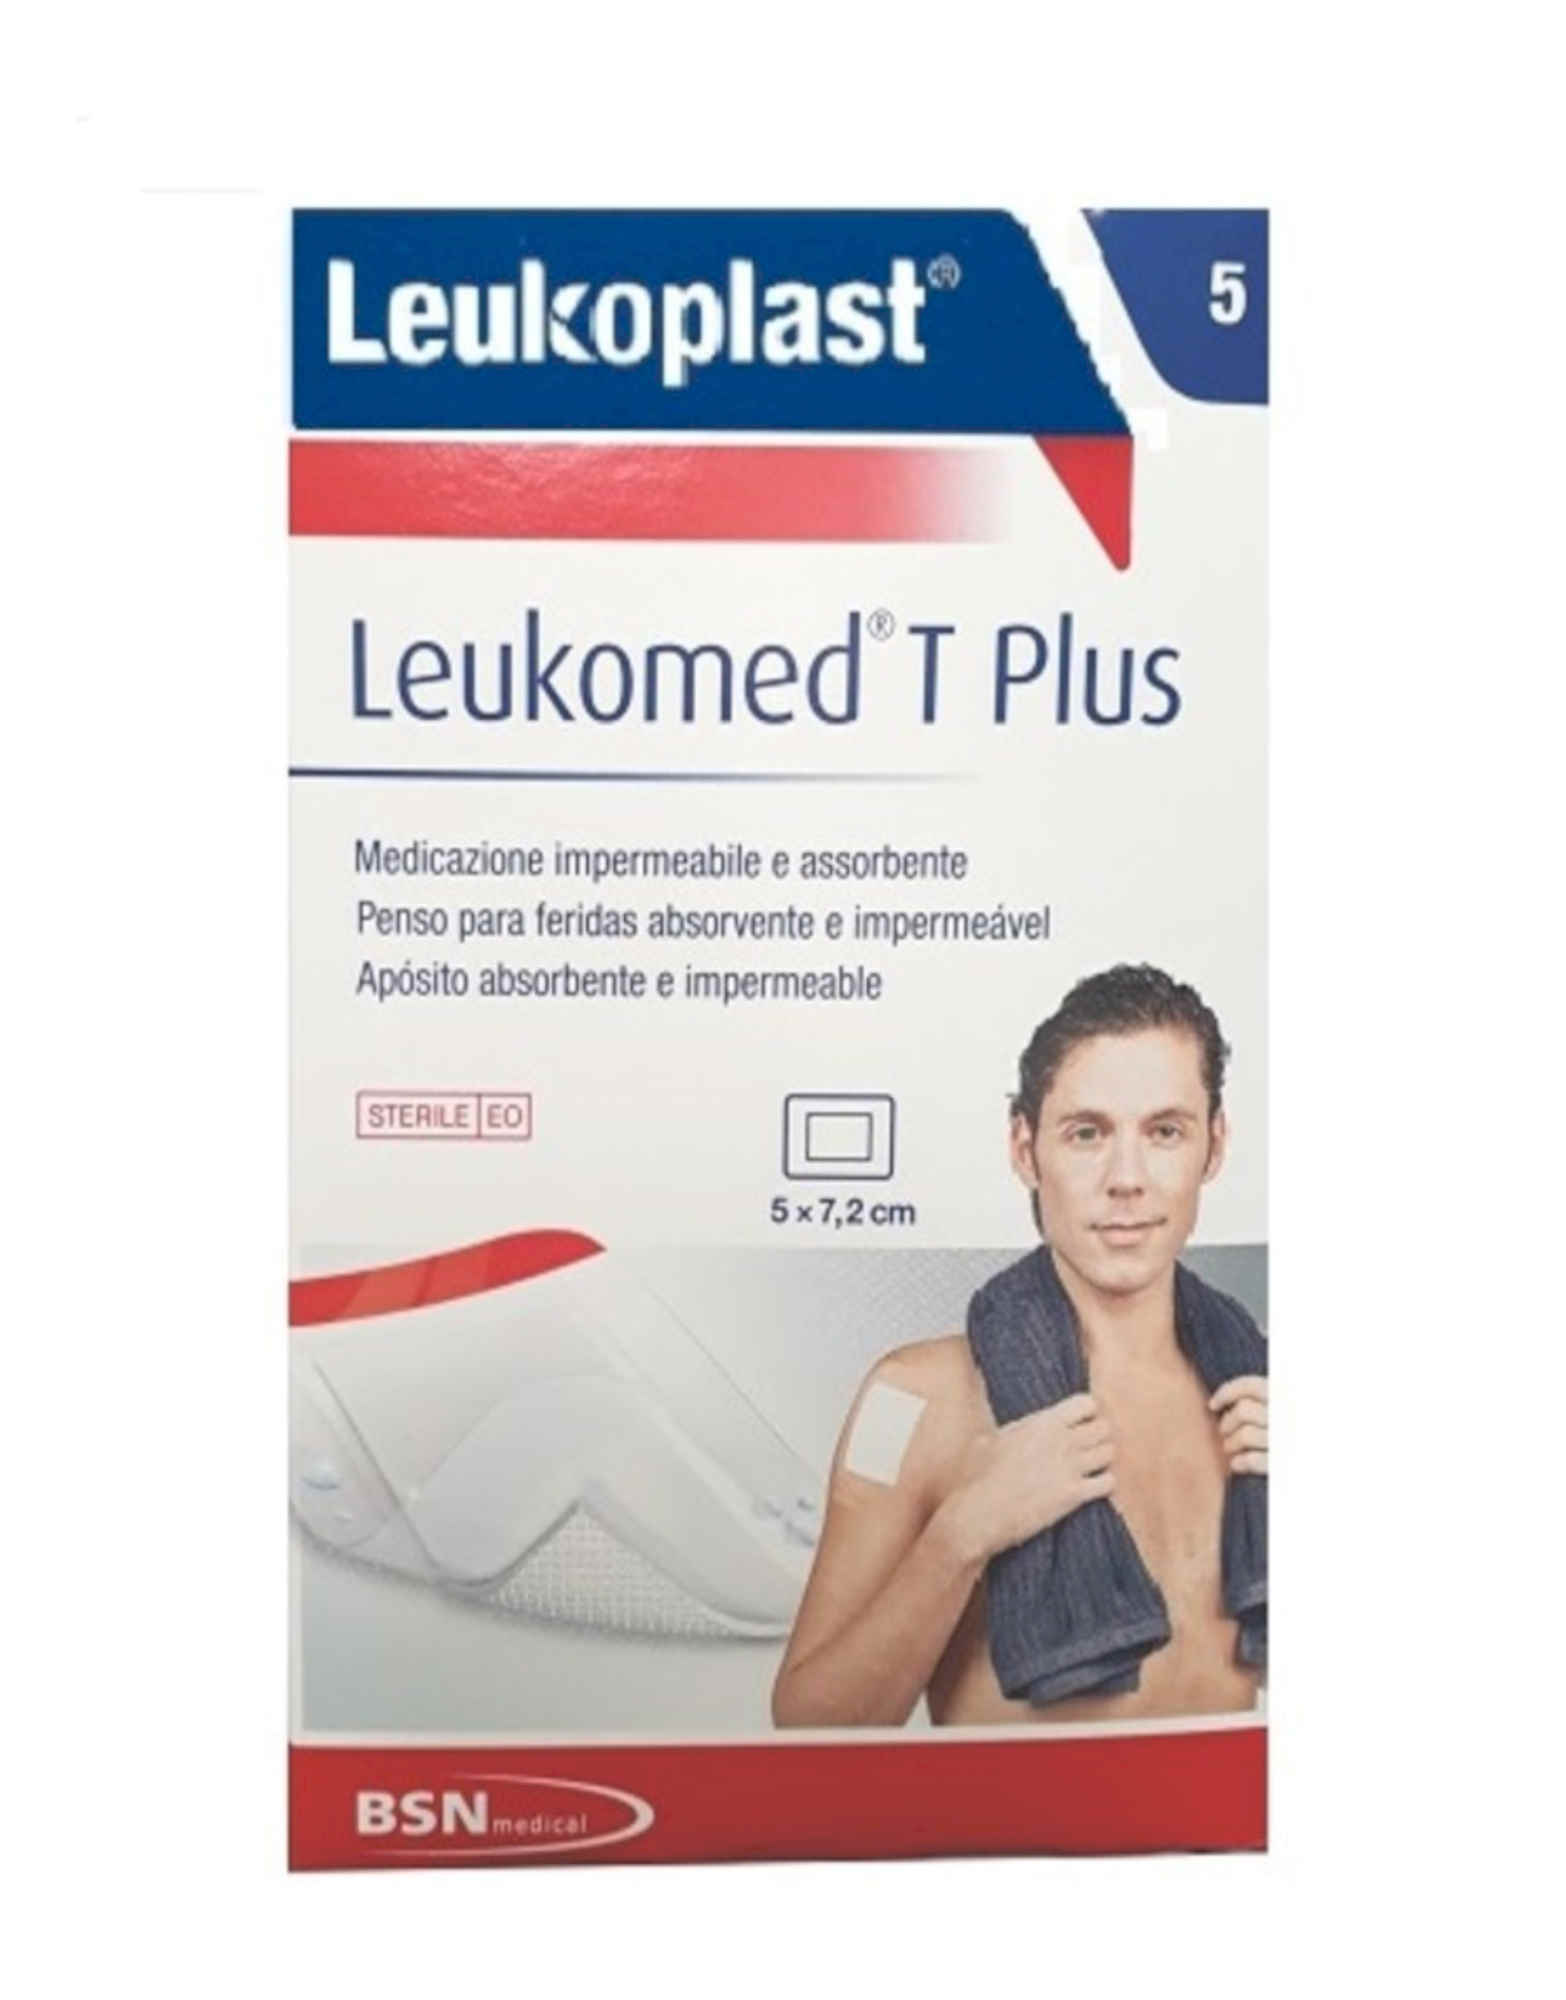 BSN MEDICAL Leukoplast - Leukomed T Plus 1 Confezione